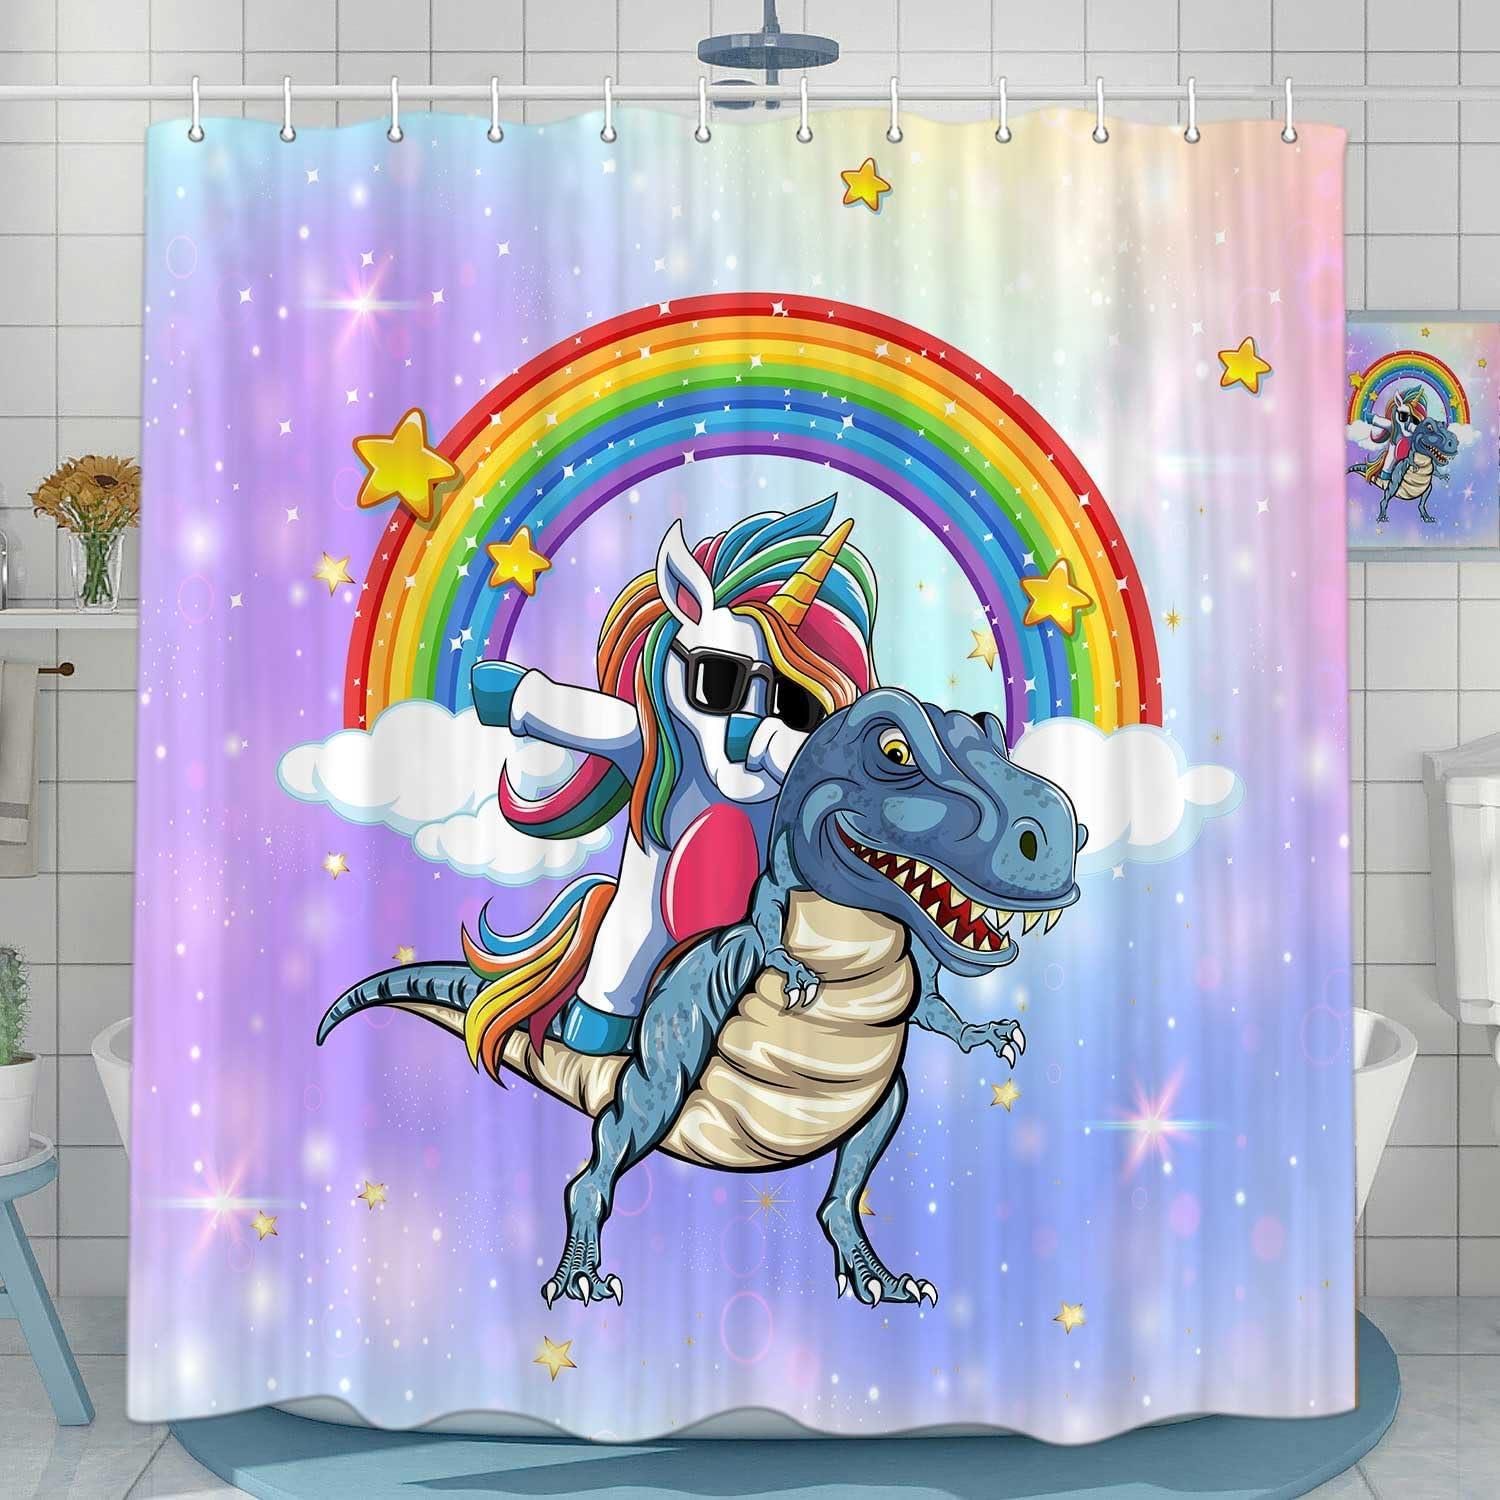 Bonita cortina de ducha de dinosaurio con diseño de unicornio para el -  VIRTUAL MUEBLES